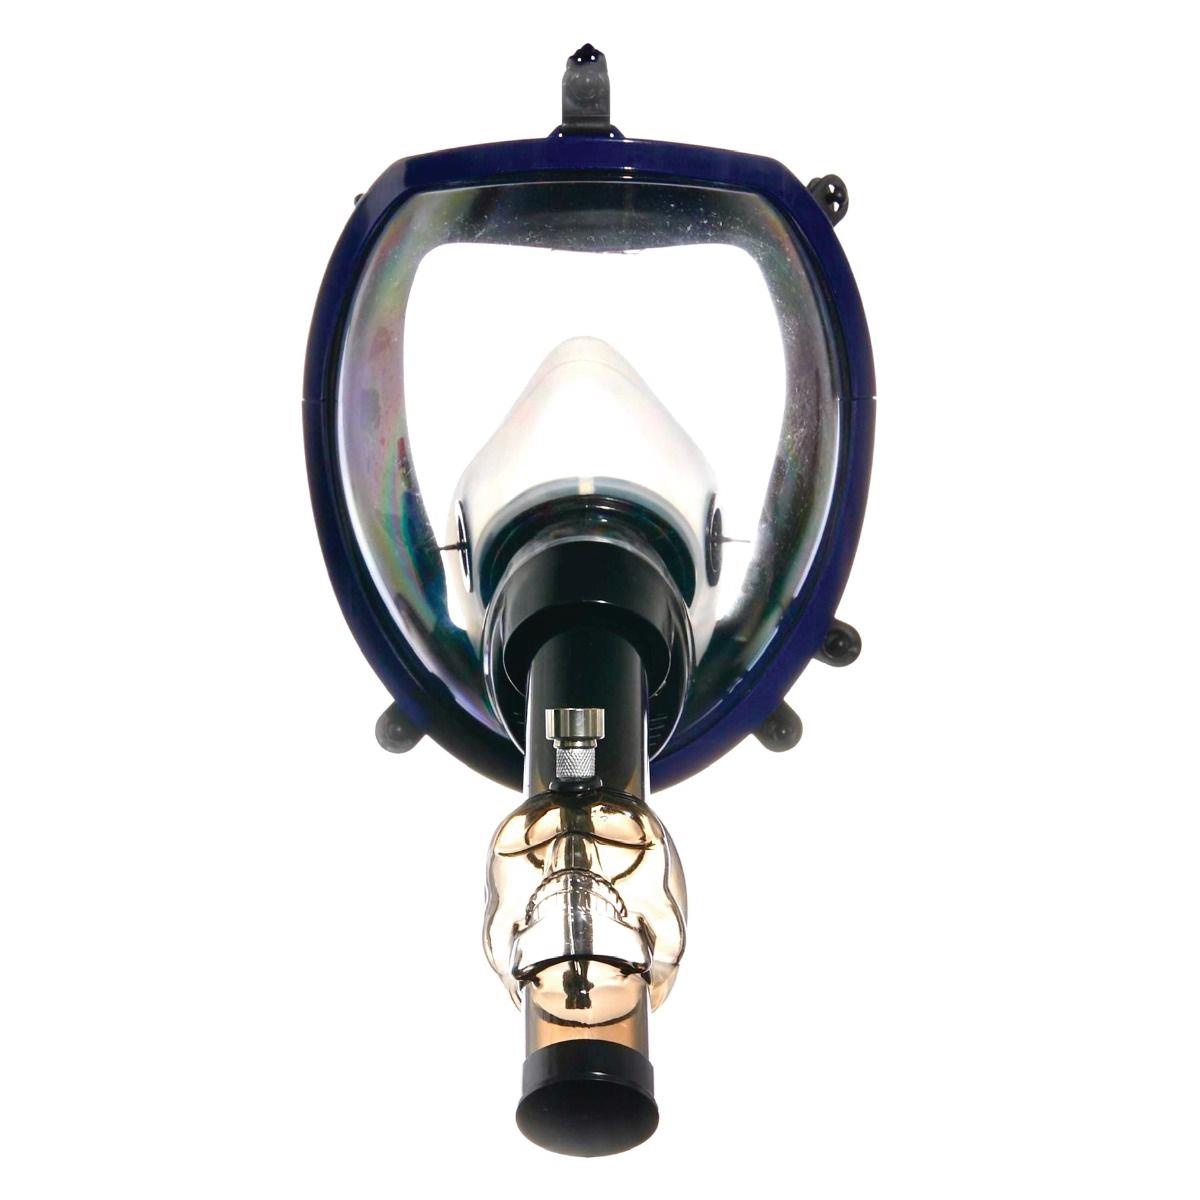 (6 unidades) Máscara de gas con visera de alta calidad y tubería de agua acrílica, tintes surtidos $35 c/u